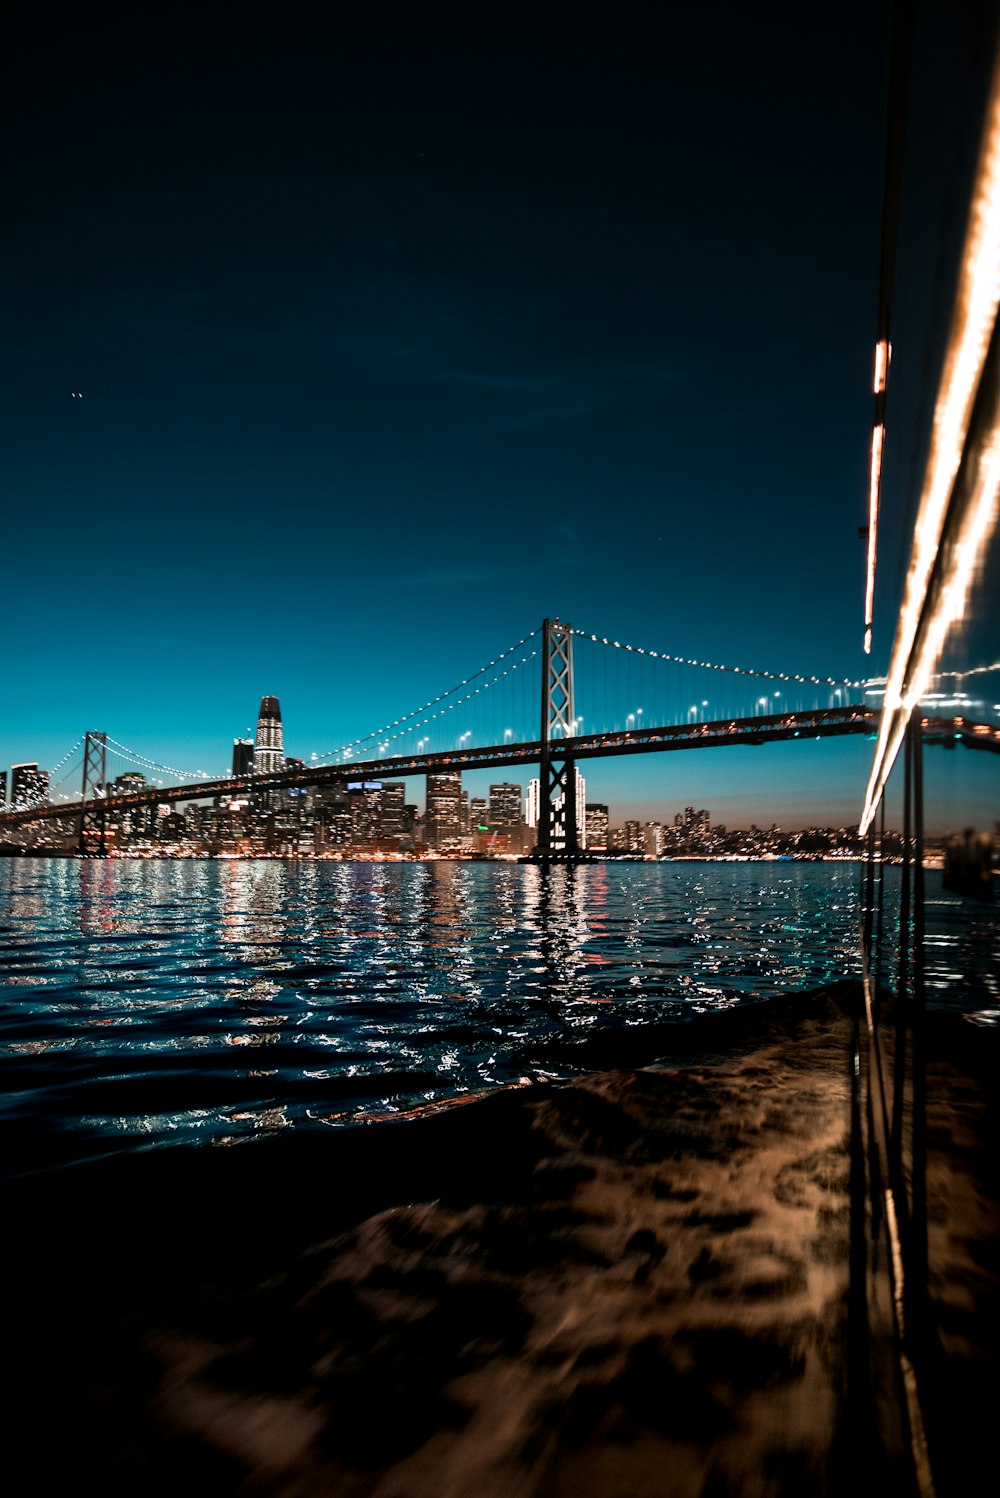 San Francisco-Oakland Bay Bridge, Kalifornien bei Nacht